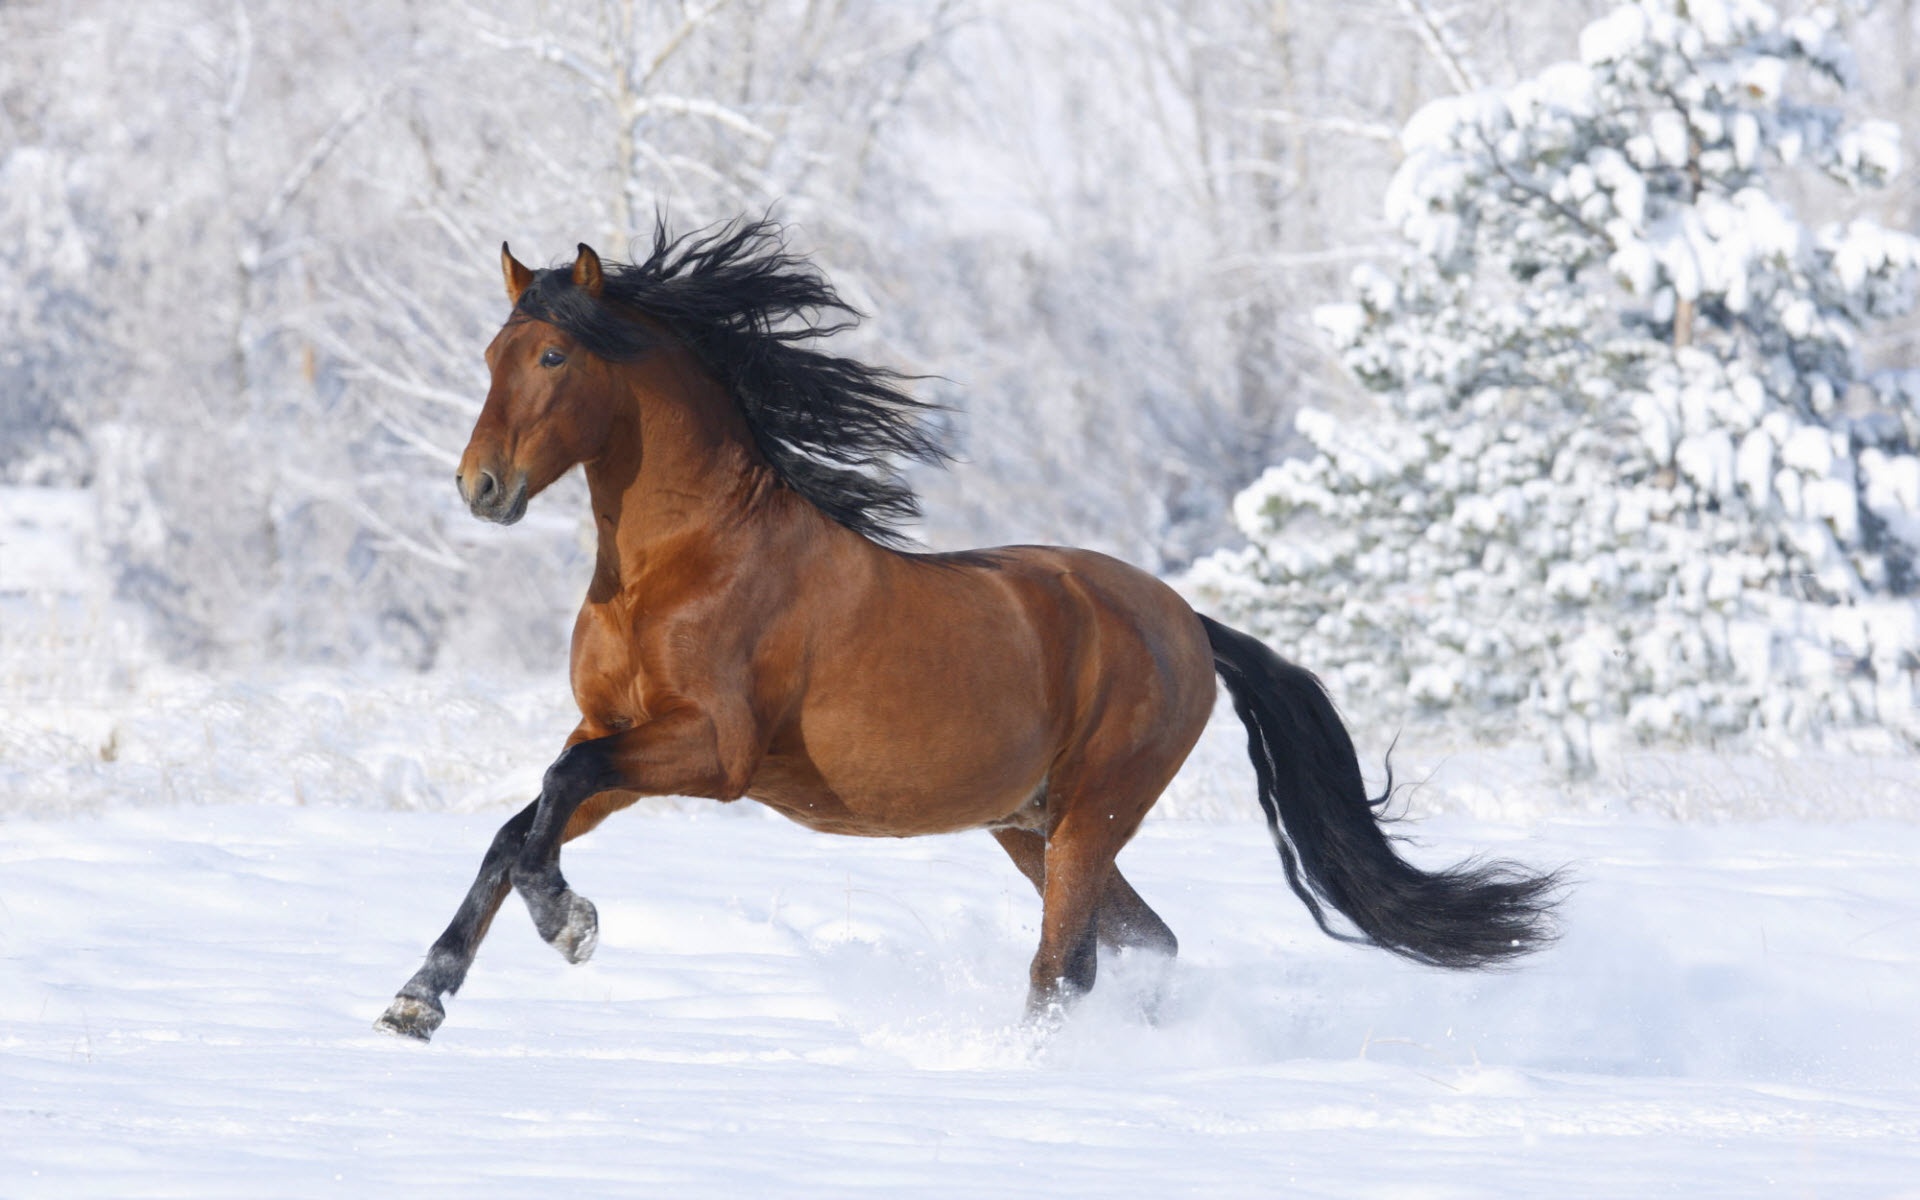 Скачать обои бесплатно Животные, Зима, Снег, Лошадь картинка на рабочий стол ПК